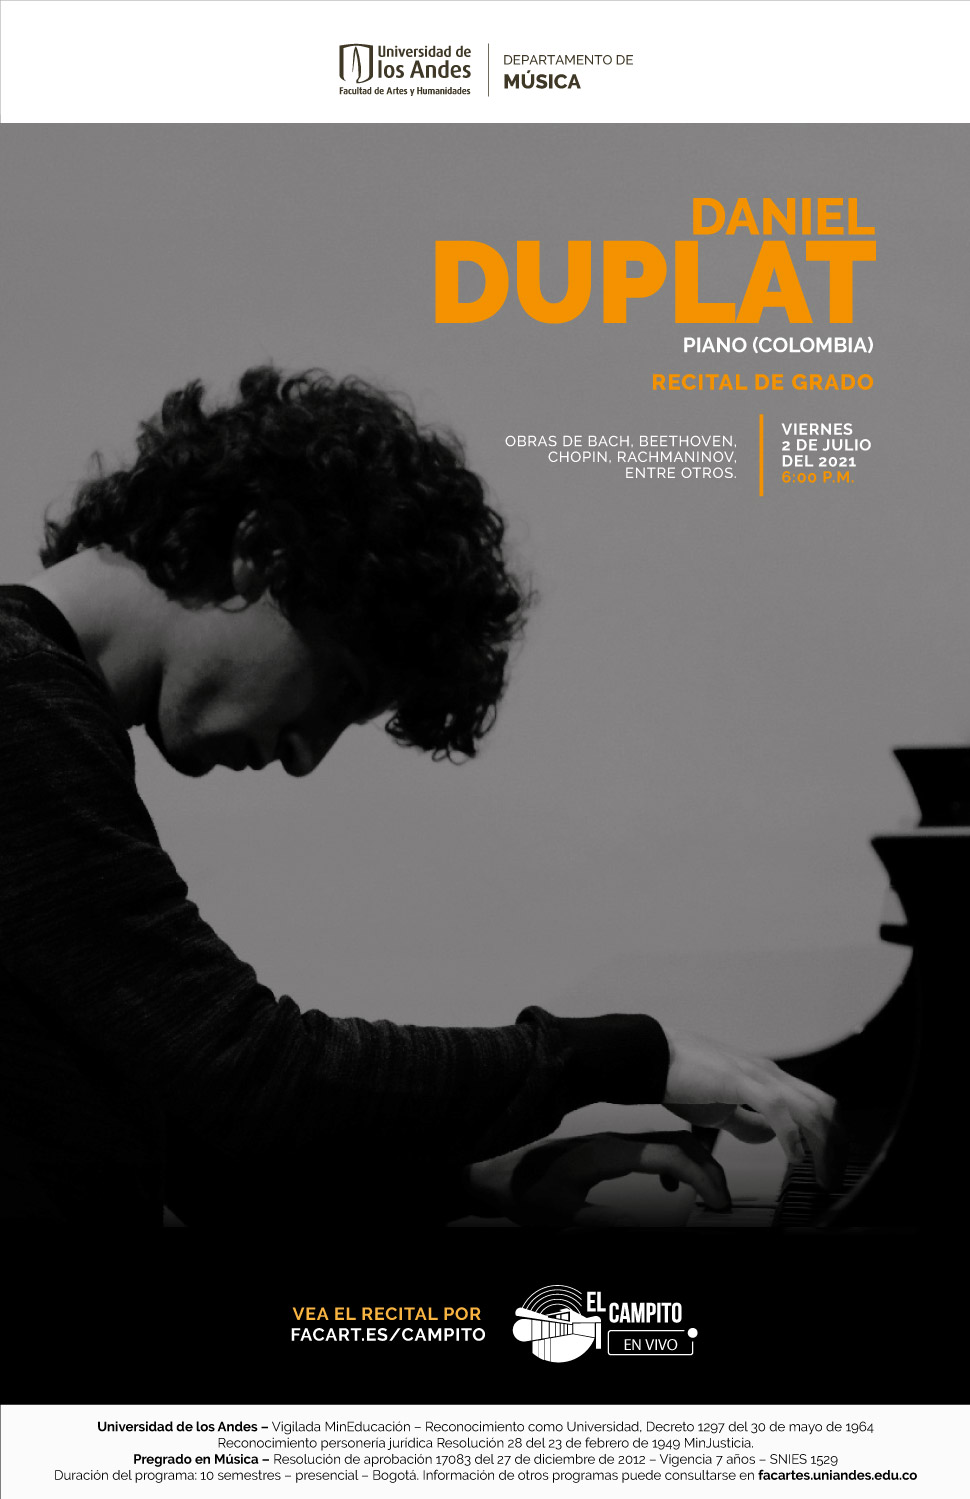 Recital de grado: Daniel Duplat, piano